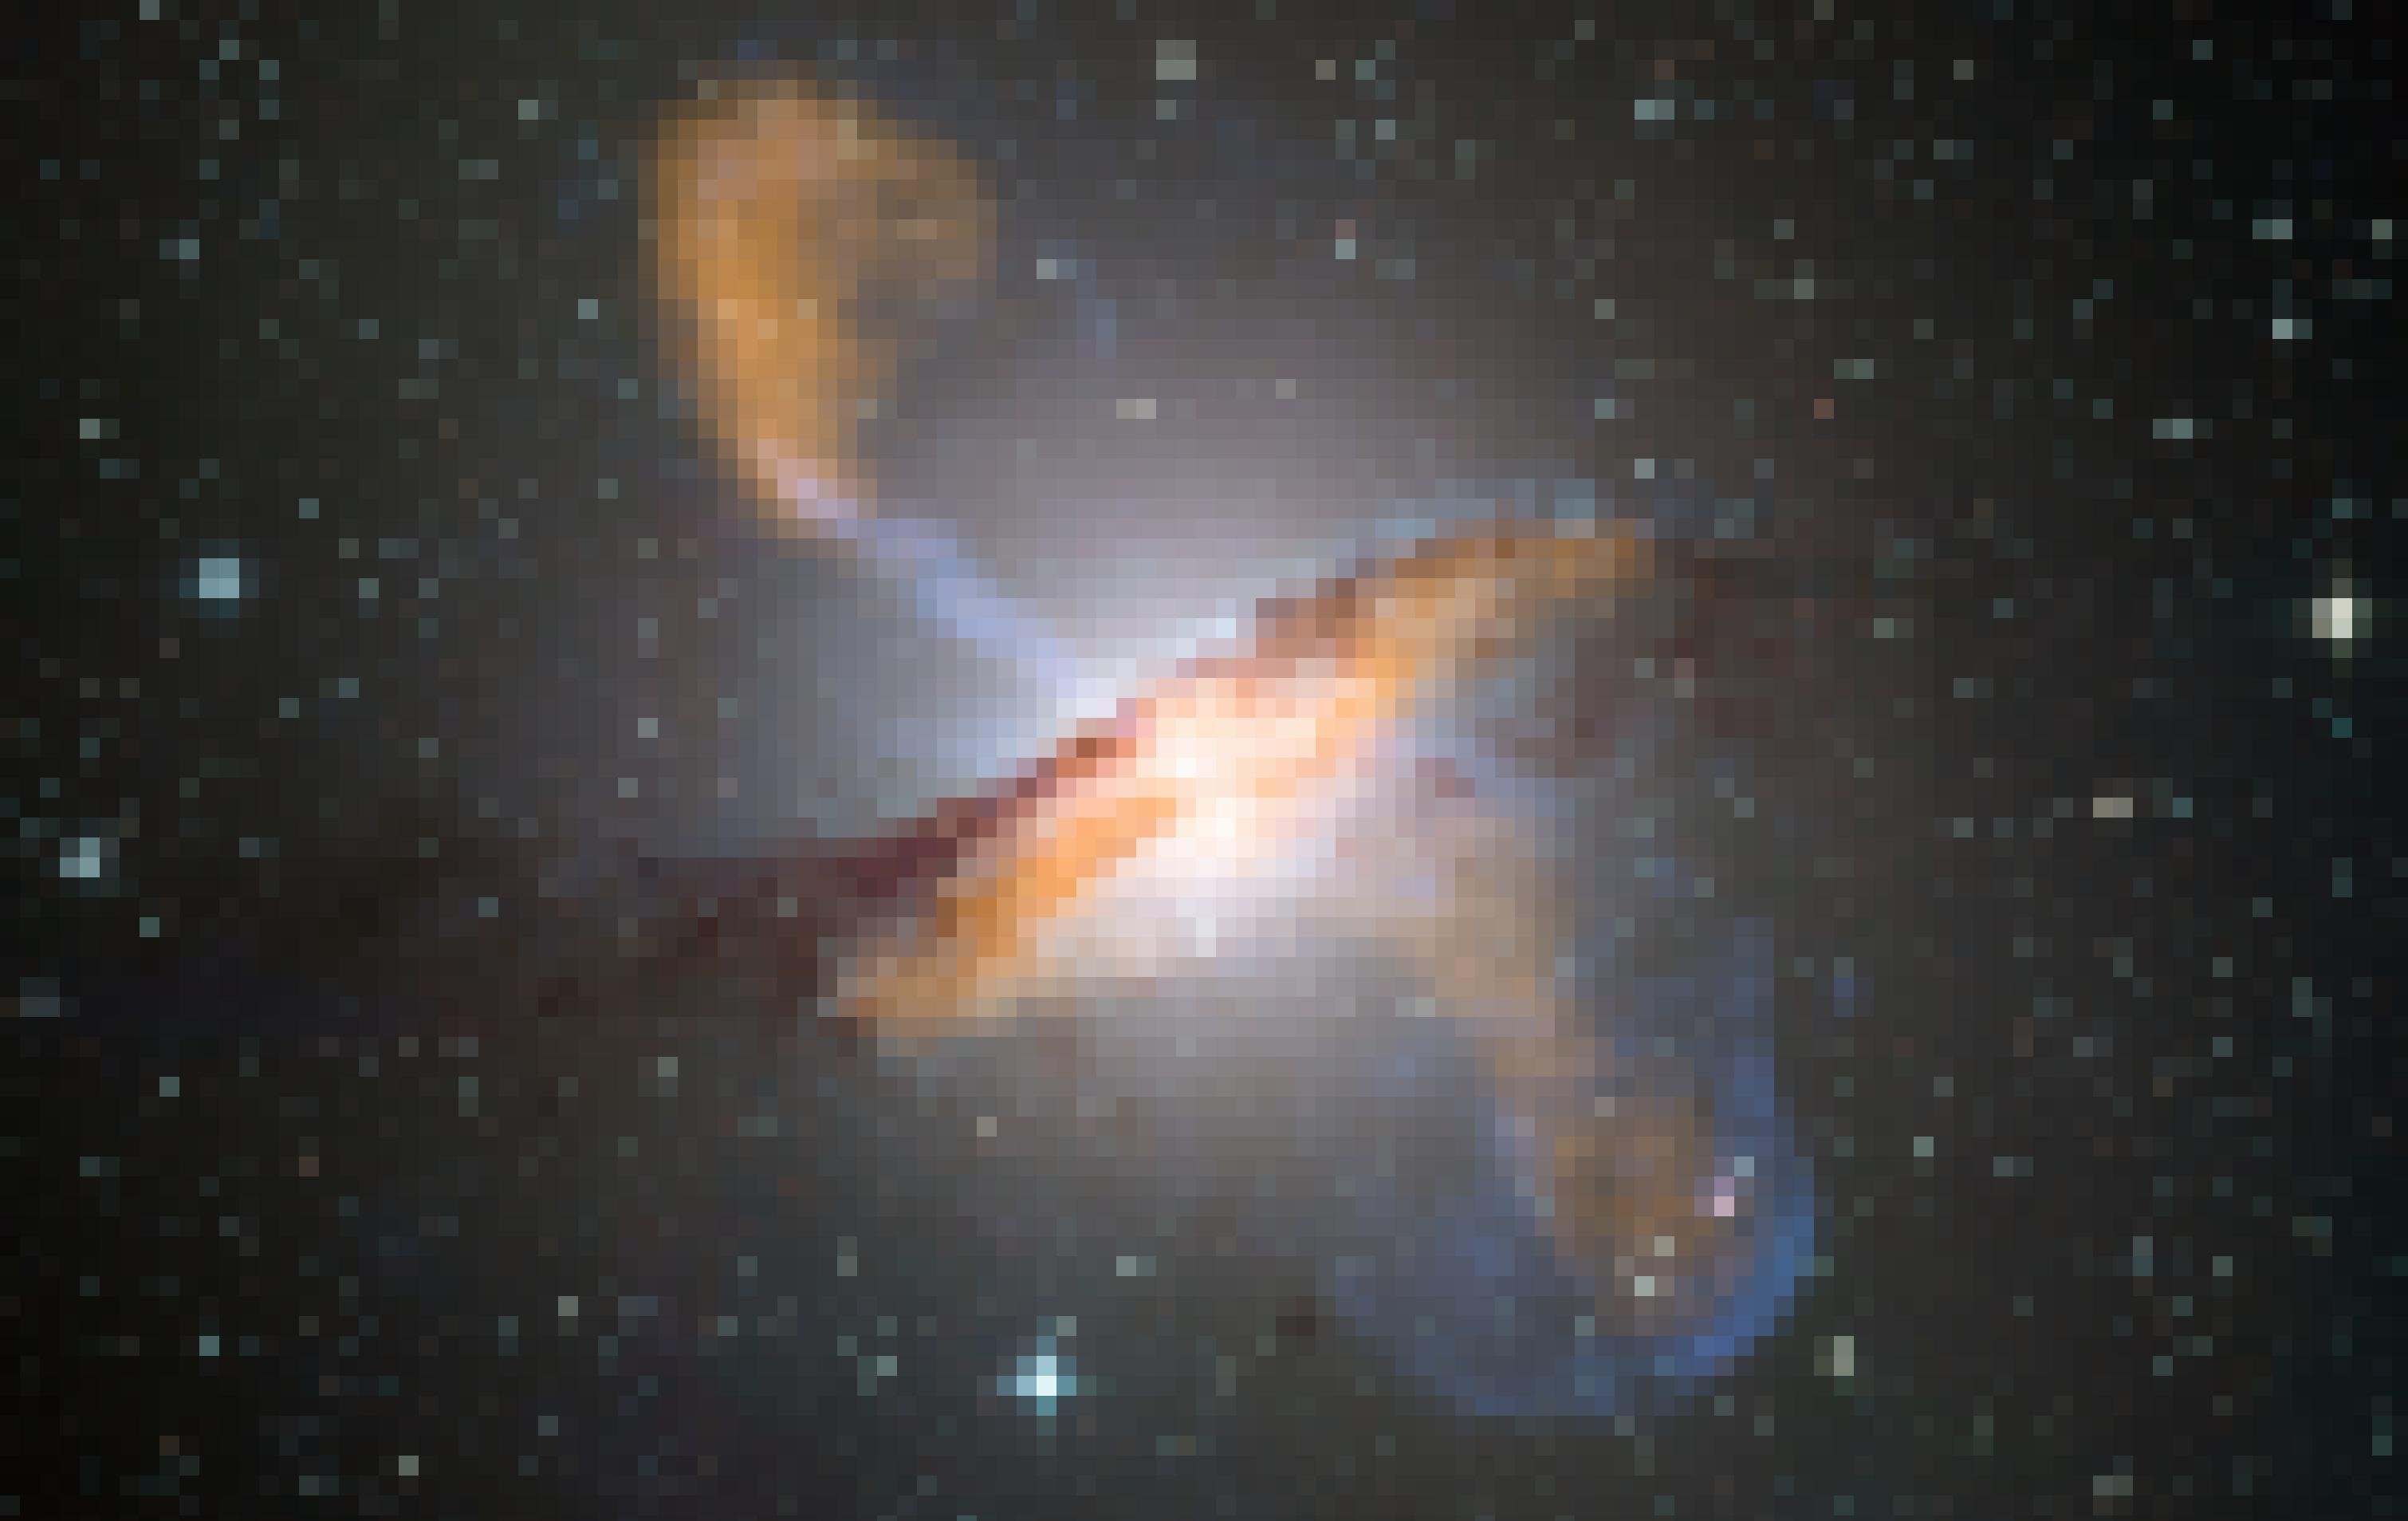 Das Bild zeigt die Galaxie Centaurus A schräg von der Seite. Aus ihrem Zentrum schießen zwei keulenartig geformte Materie-Jets – einer nach oben links, der andere nach unten rechts – weit ins All hinaus. Zusammen sind sie länger sind als das Sternsystem selbst breit ist. Die Jets werden von einem massereichen Schwarzen Loch angetrieben, das sich im Zentrum der Galaxie befindet. Unsere eigene Milchstraße enthält ebenfalls ein zentrales Schwarzes Loch in seiner Mitte. Und wahrscheinlich hat es in frühen Zeiten ebenfalls ähnliche Gas-Jets ins All hinausgeschleudert.